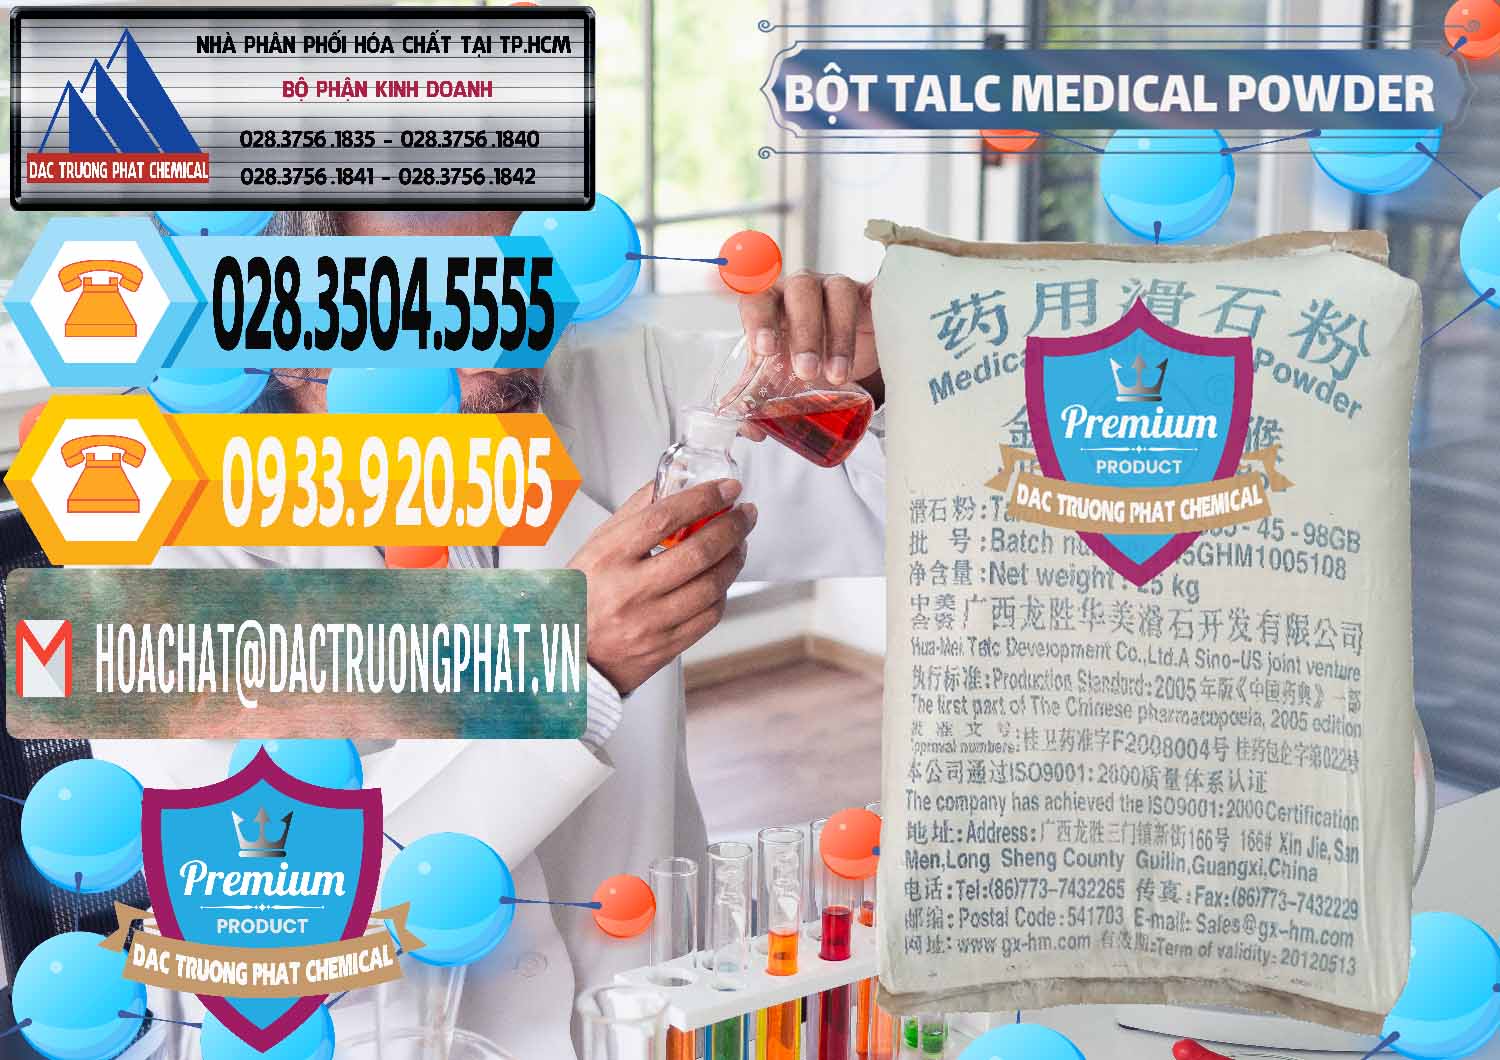 Nơi bán & cung ứng Bột Talc Medical Powder Trung Quốc China - 0036 - Cty kinh doanh _ phân phối hóa chất tại TP.HCM - hoachattayrua.net